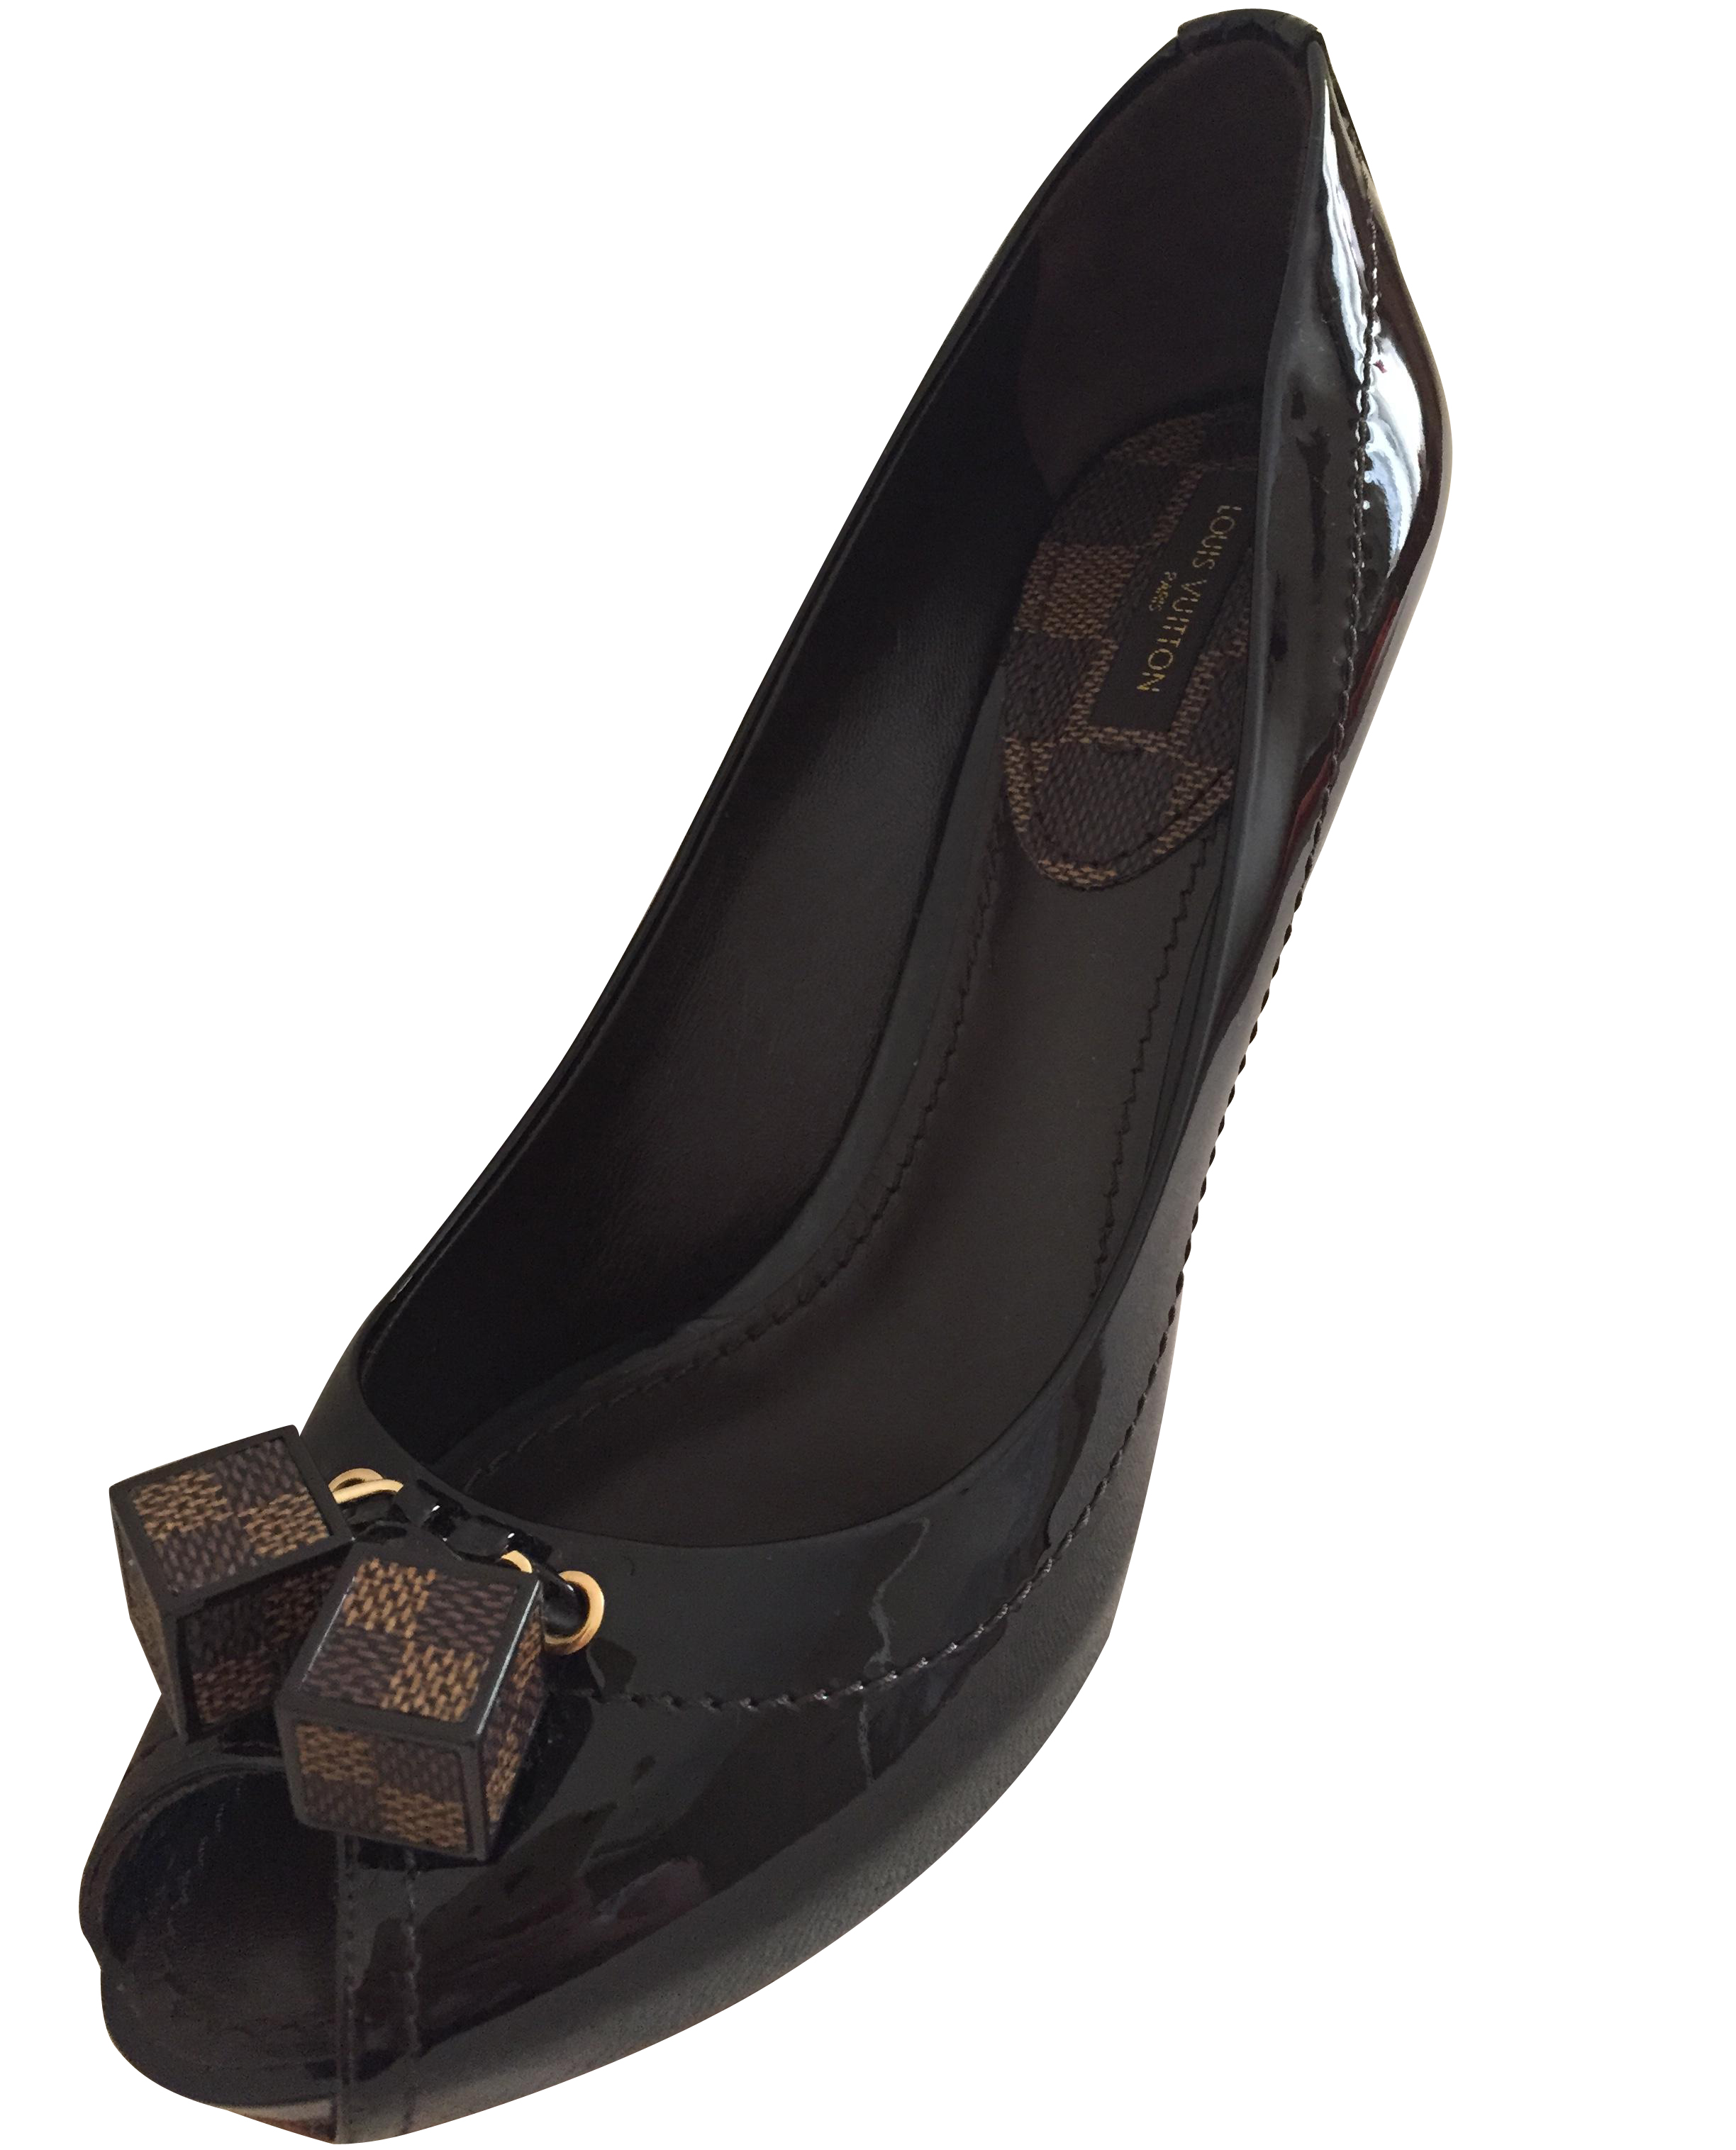 Louis Vuitton Evening Shoes Size 37 Uk 4